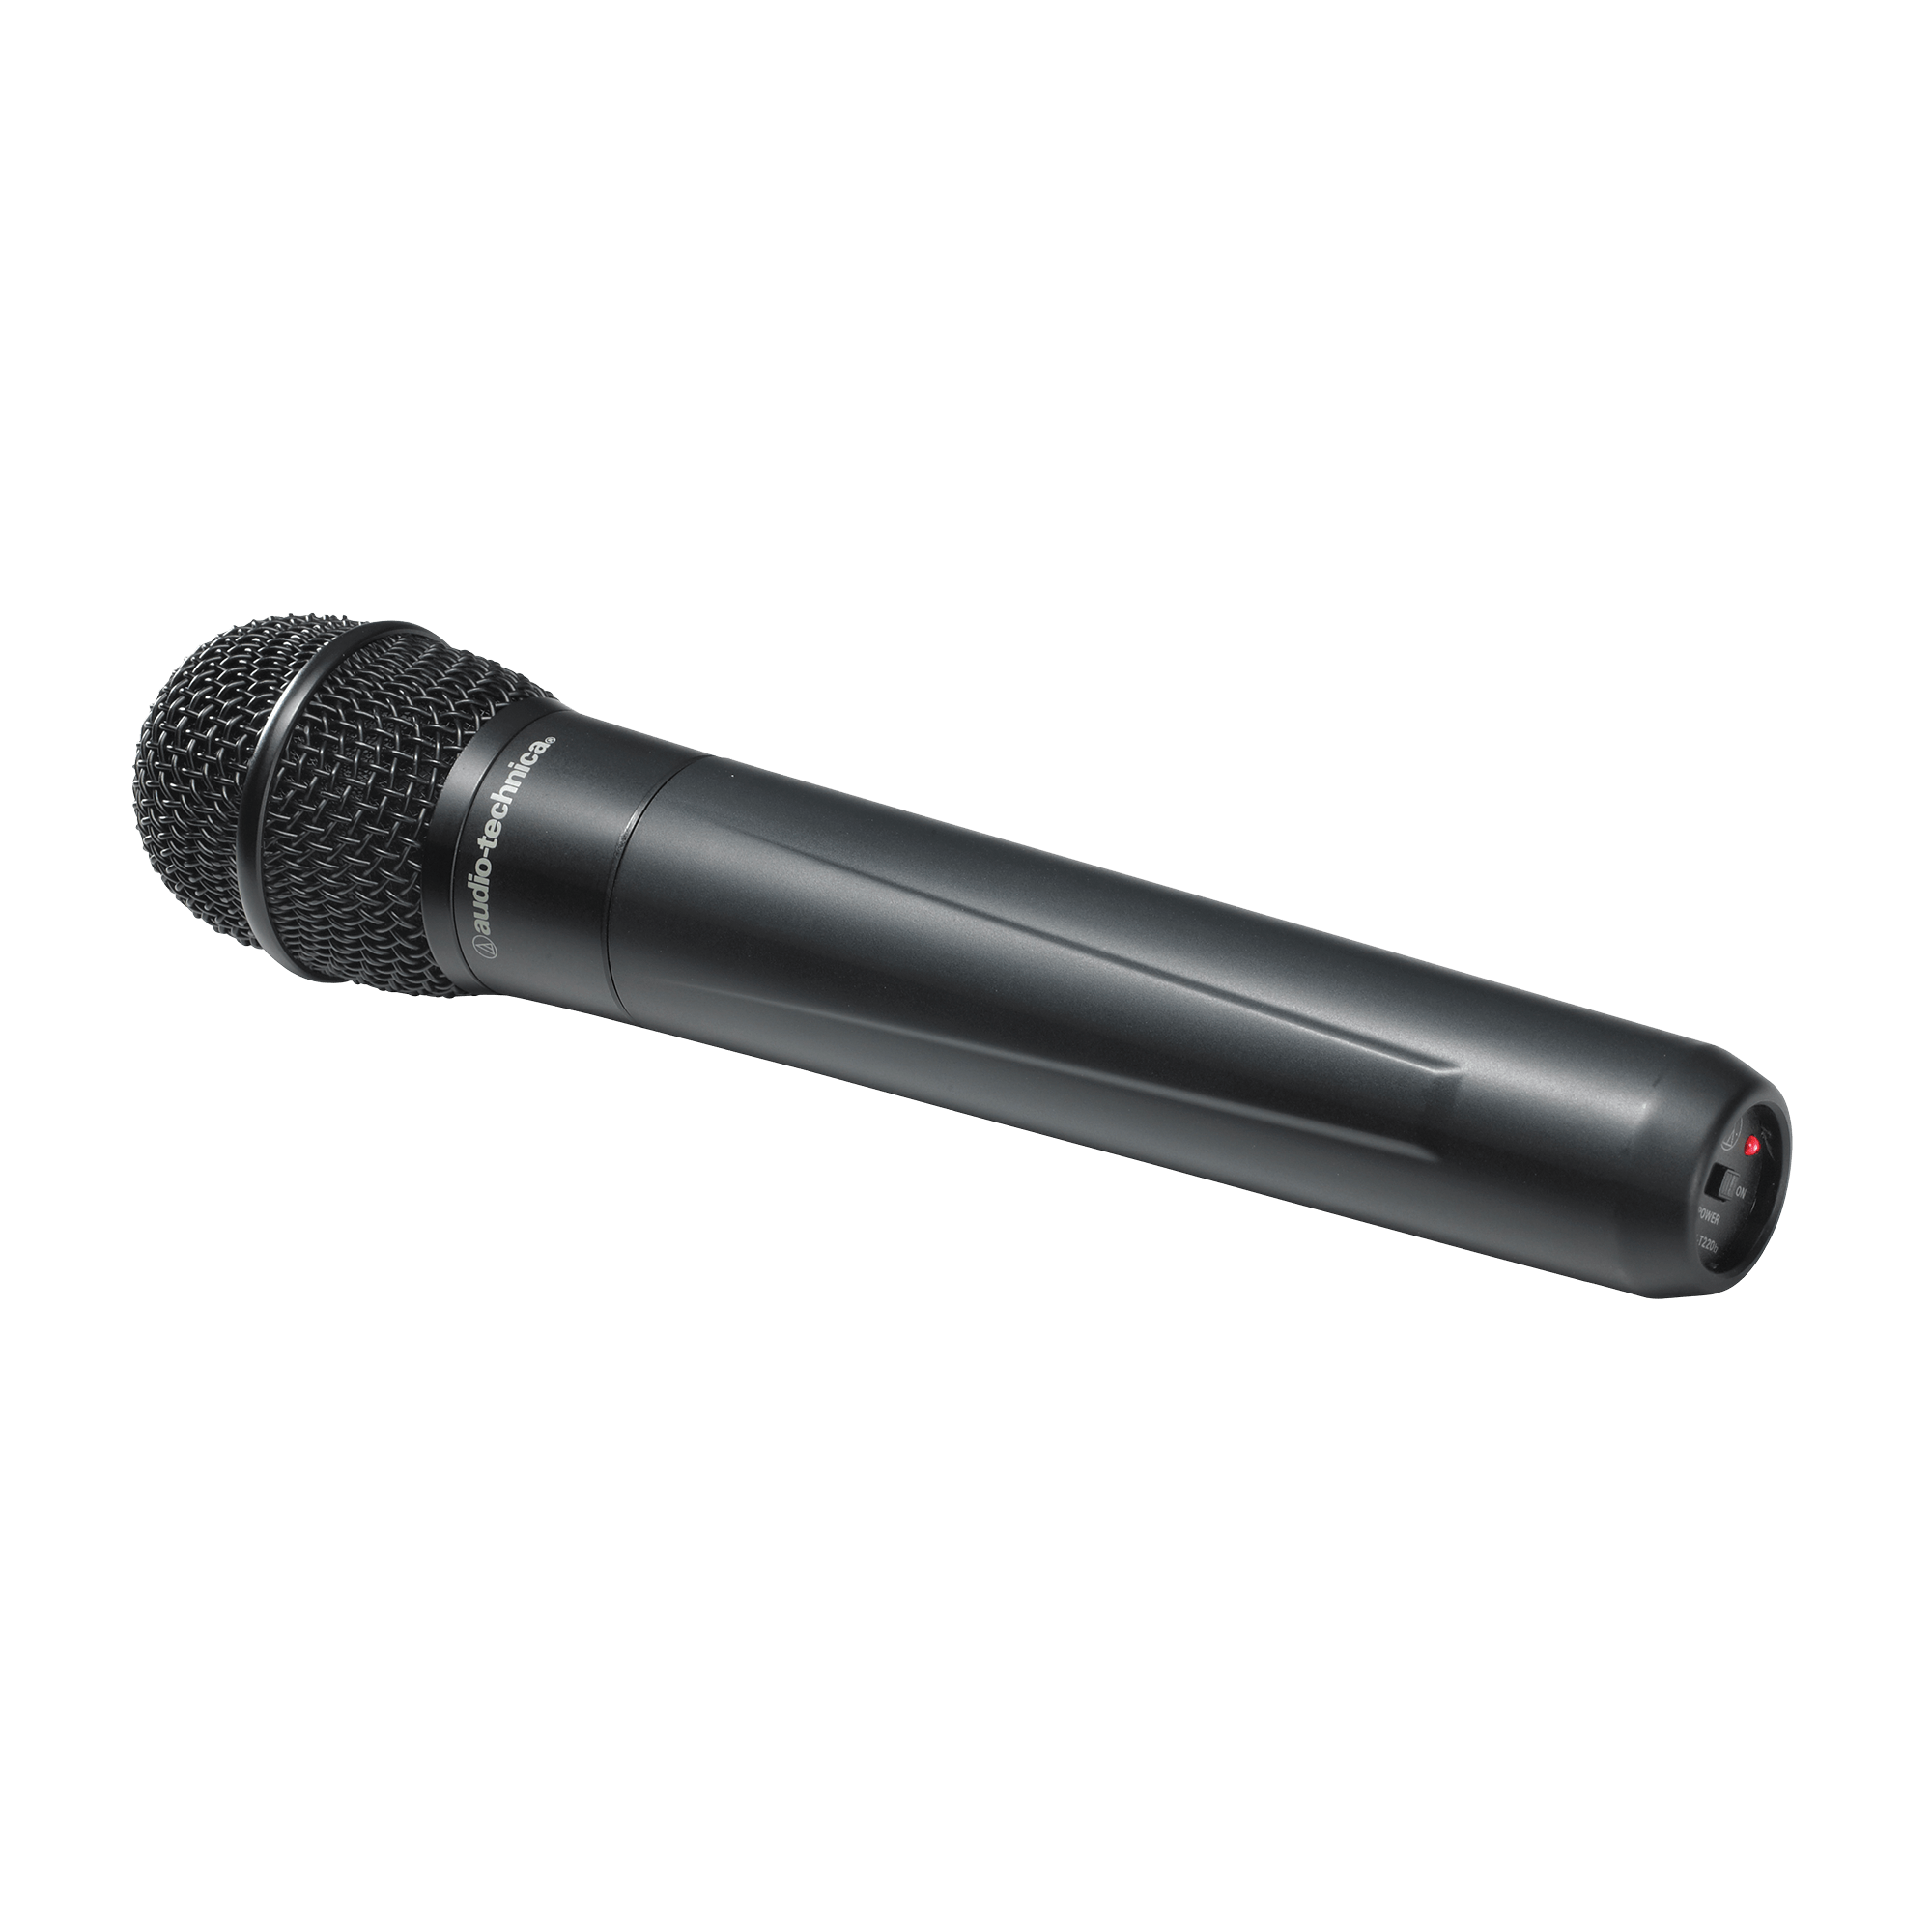 Microphone dynamique filaire avec XLR symétrique et interrupteur